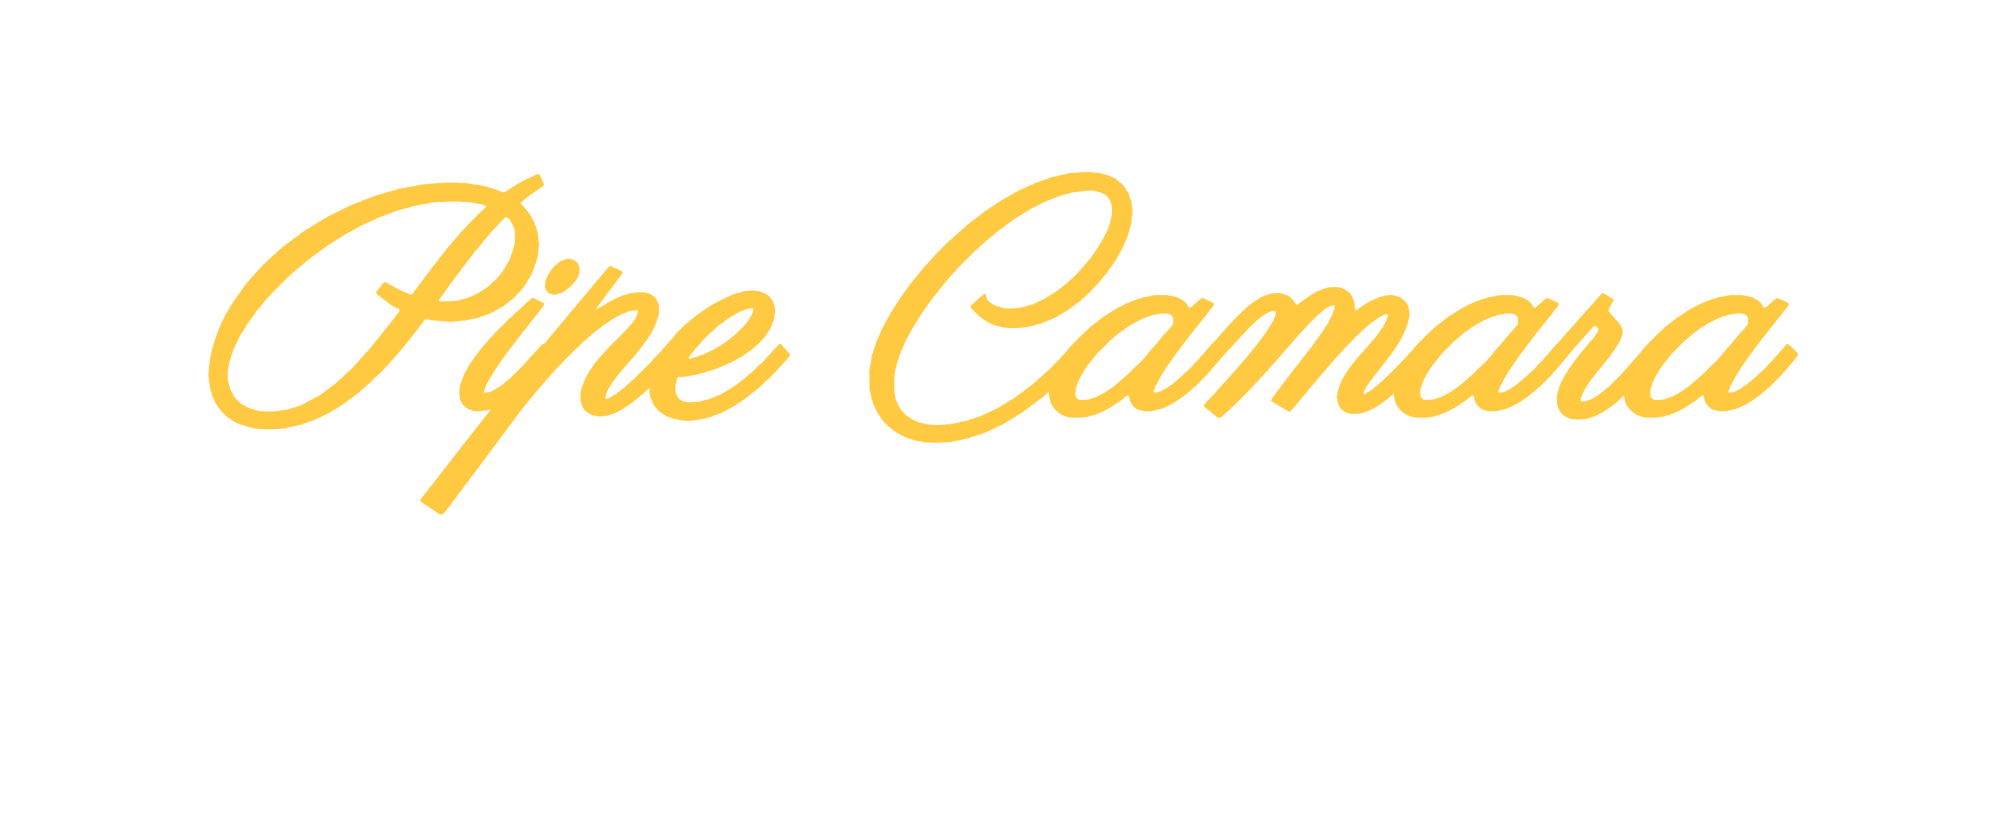 Pipe Camara